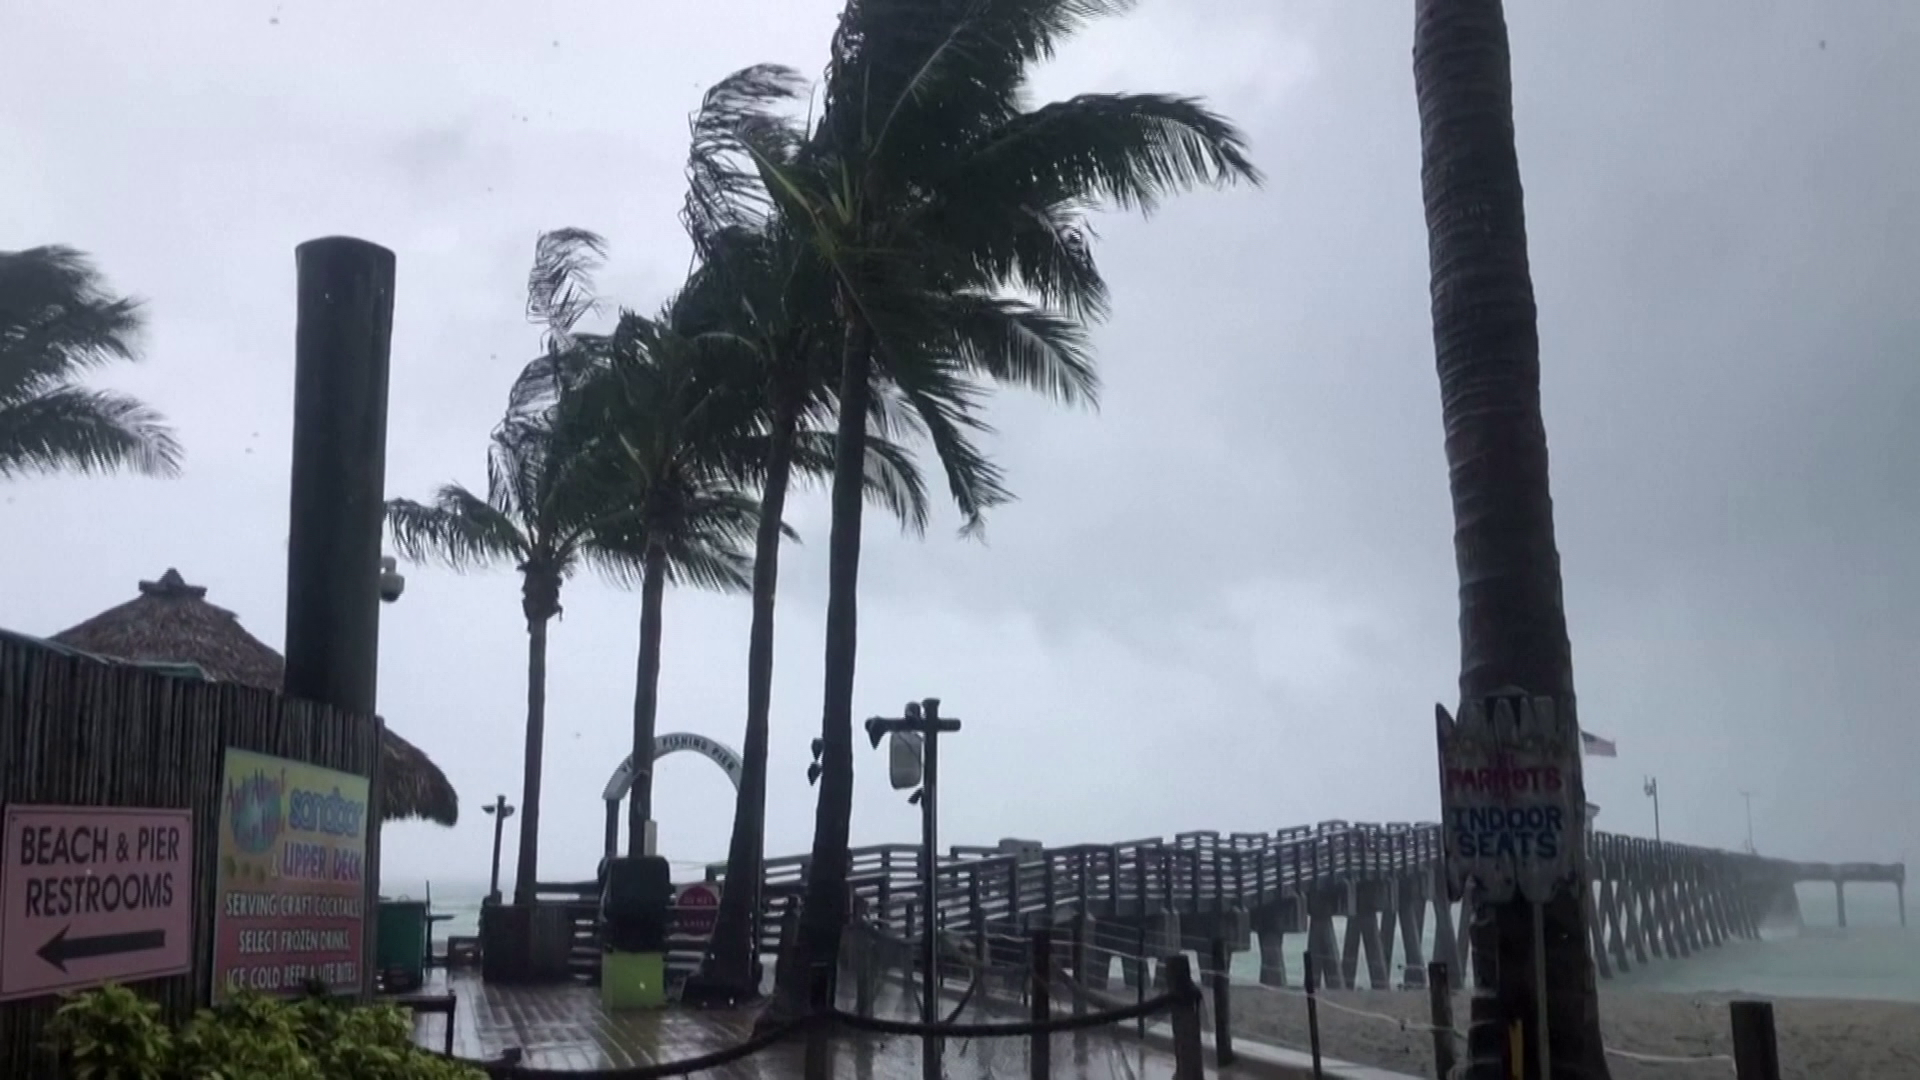 Elérte az Elsa nevű hurrikán Florida partvidékét, 12 millió ember veszélyben